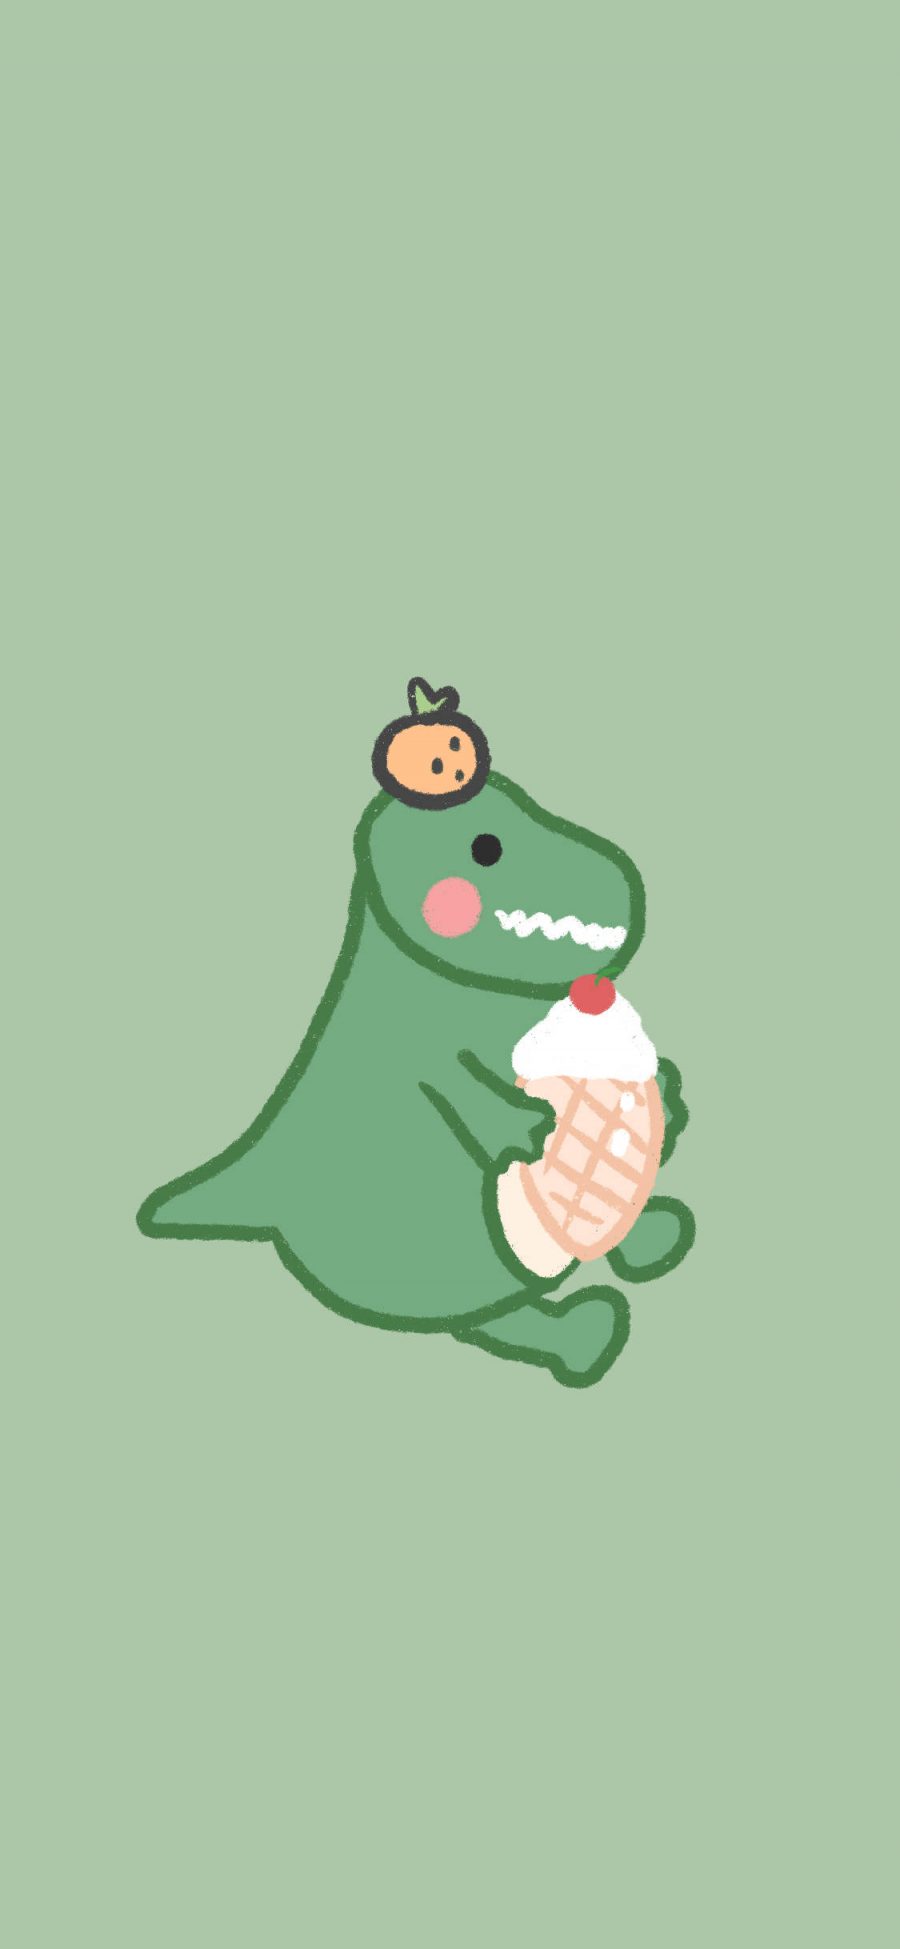 [2436×1125]绿色背景 卡通 小恐龙 冰淇淋 苹果手机动漫壁纸图片